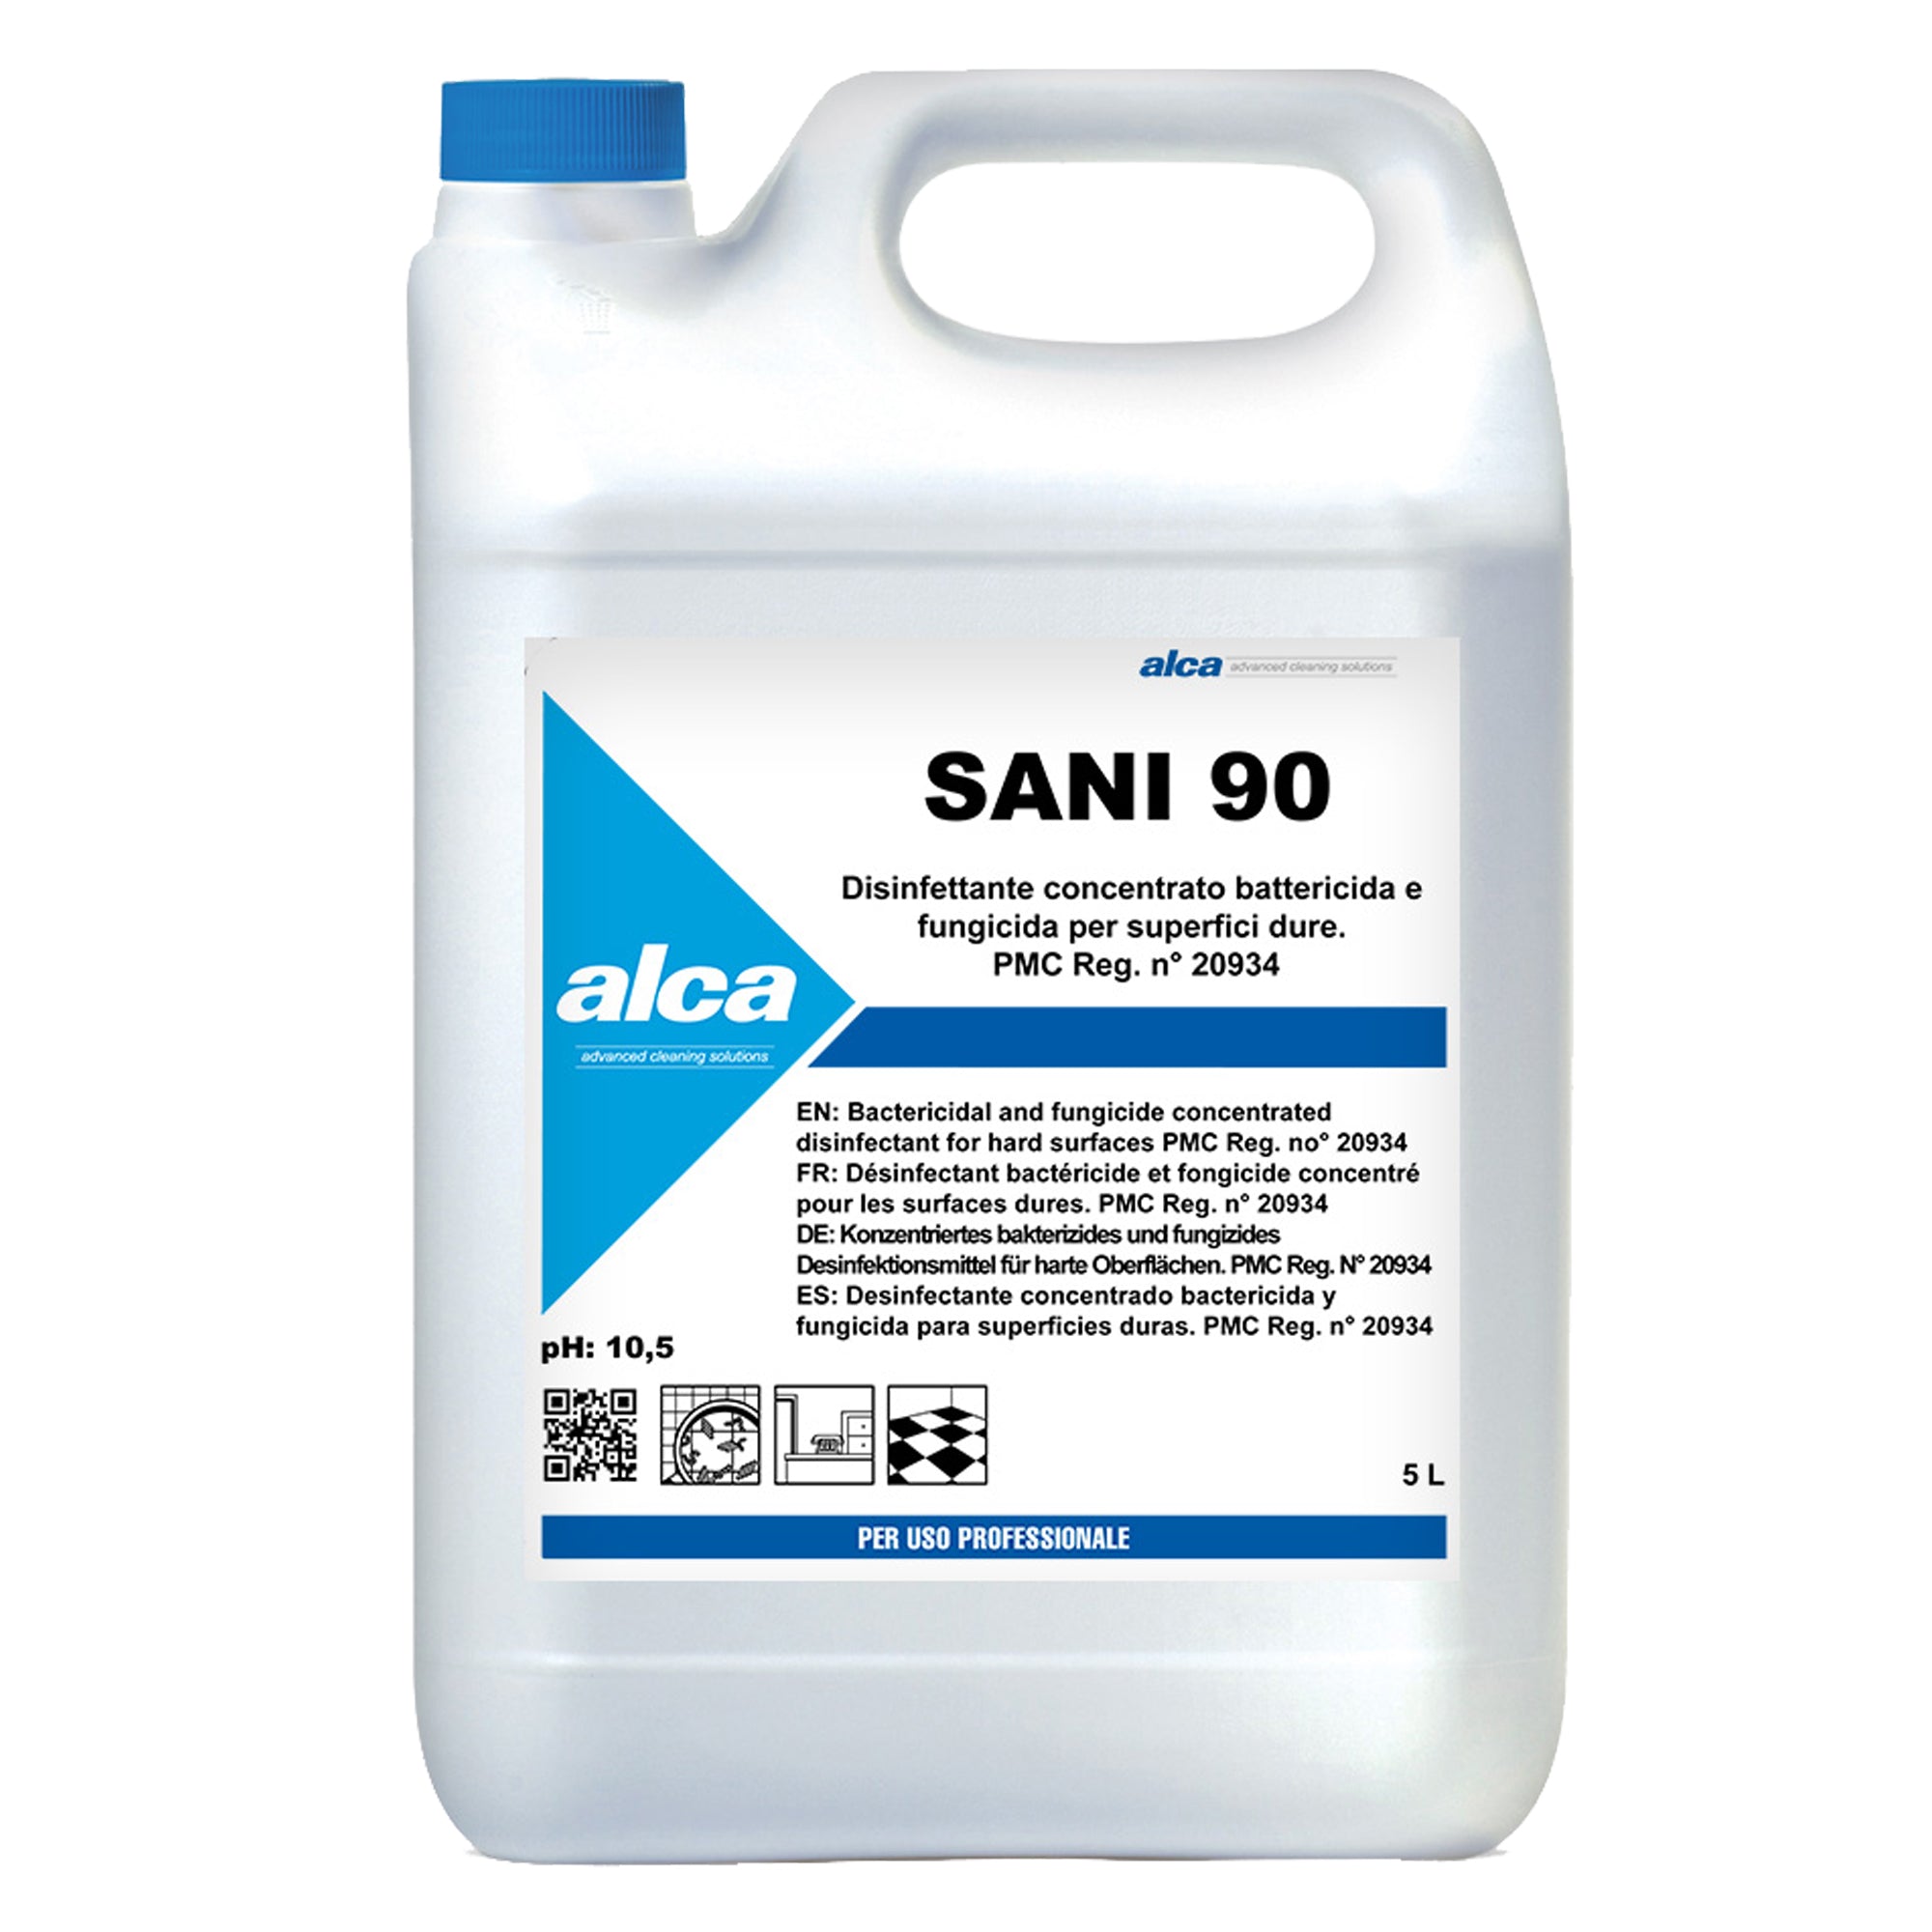 alca-disinfettante-concentrato-battericida-fungicida-sani90-tanica-5lt